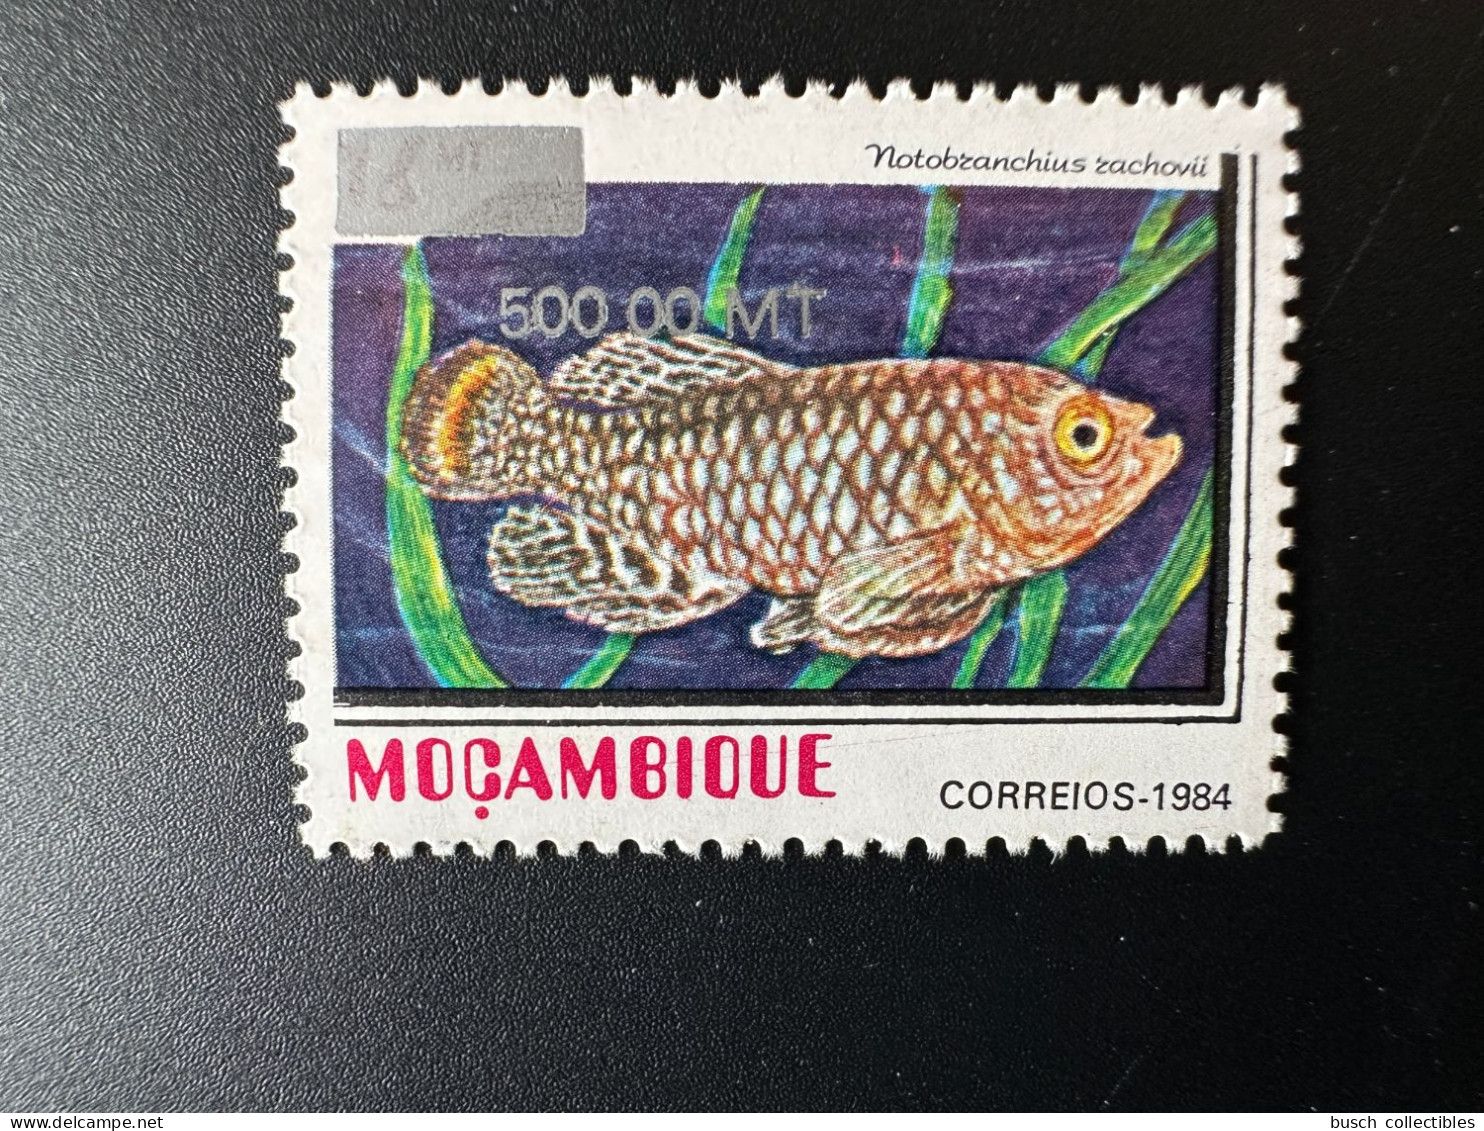 Moçambique Mozambique 1997 / 2000 Mi. 1552 Fisch Fish Poisson Notobranchius Rachovii Overprint Surchargé RARE - Mozambique